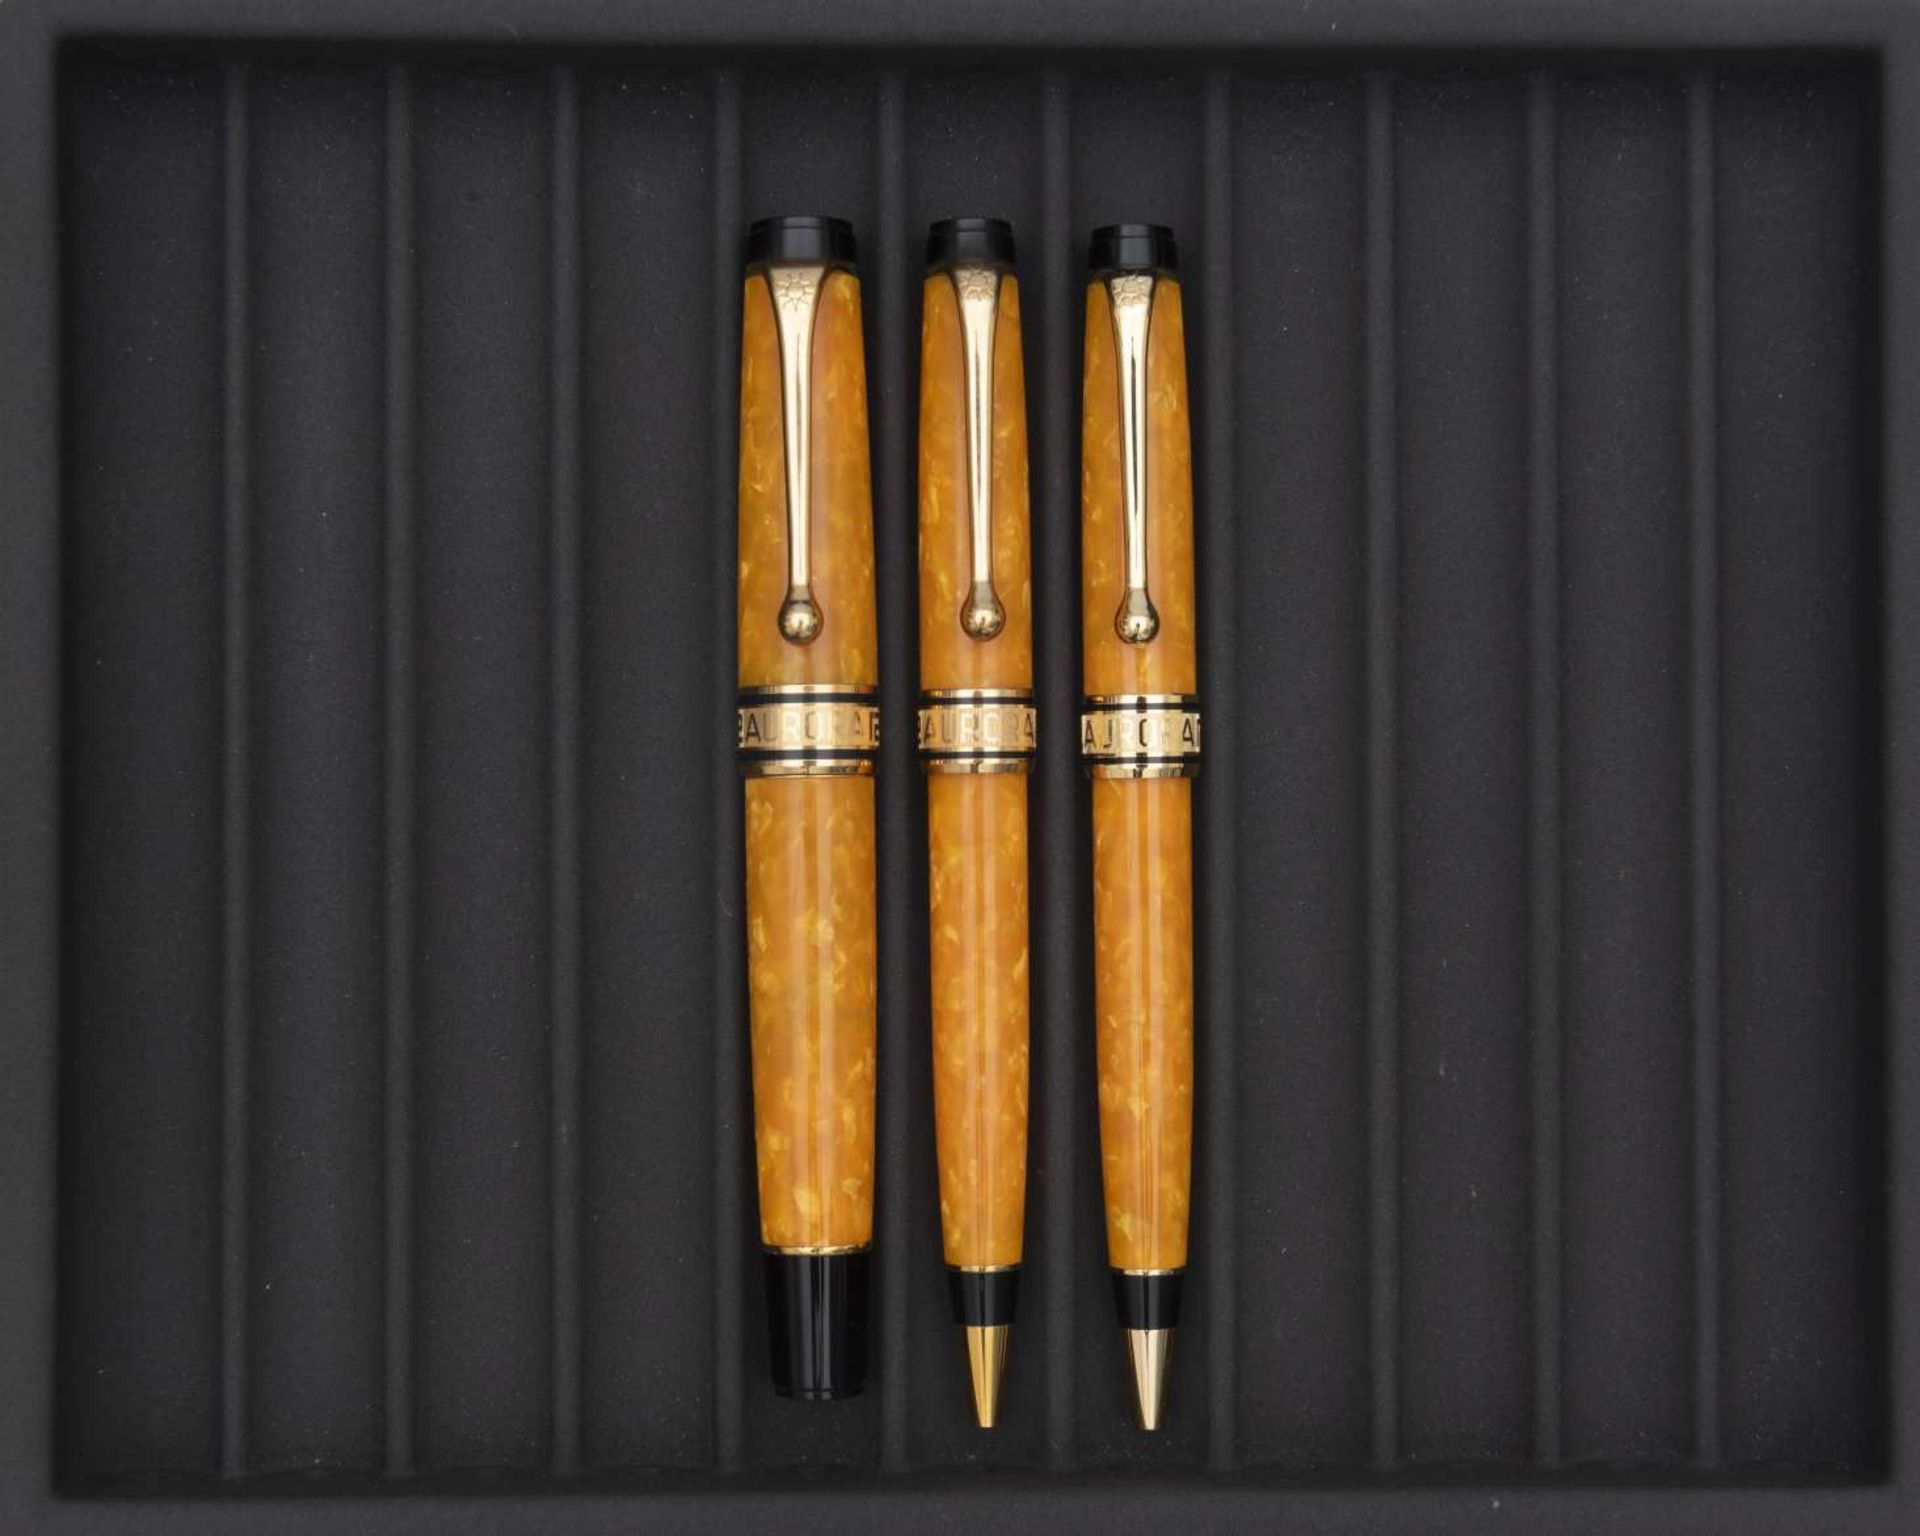 AURORA, Sole Optima, Lot de trois stylos Parure en auroloïd marbré jaune orangé, attributs plaqués